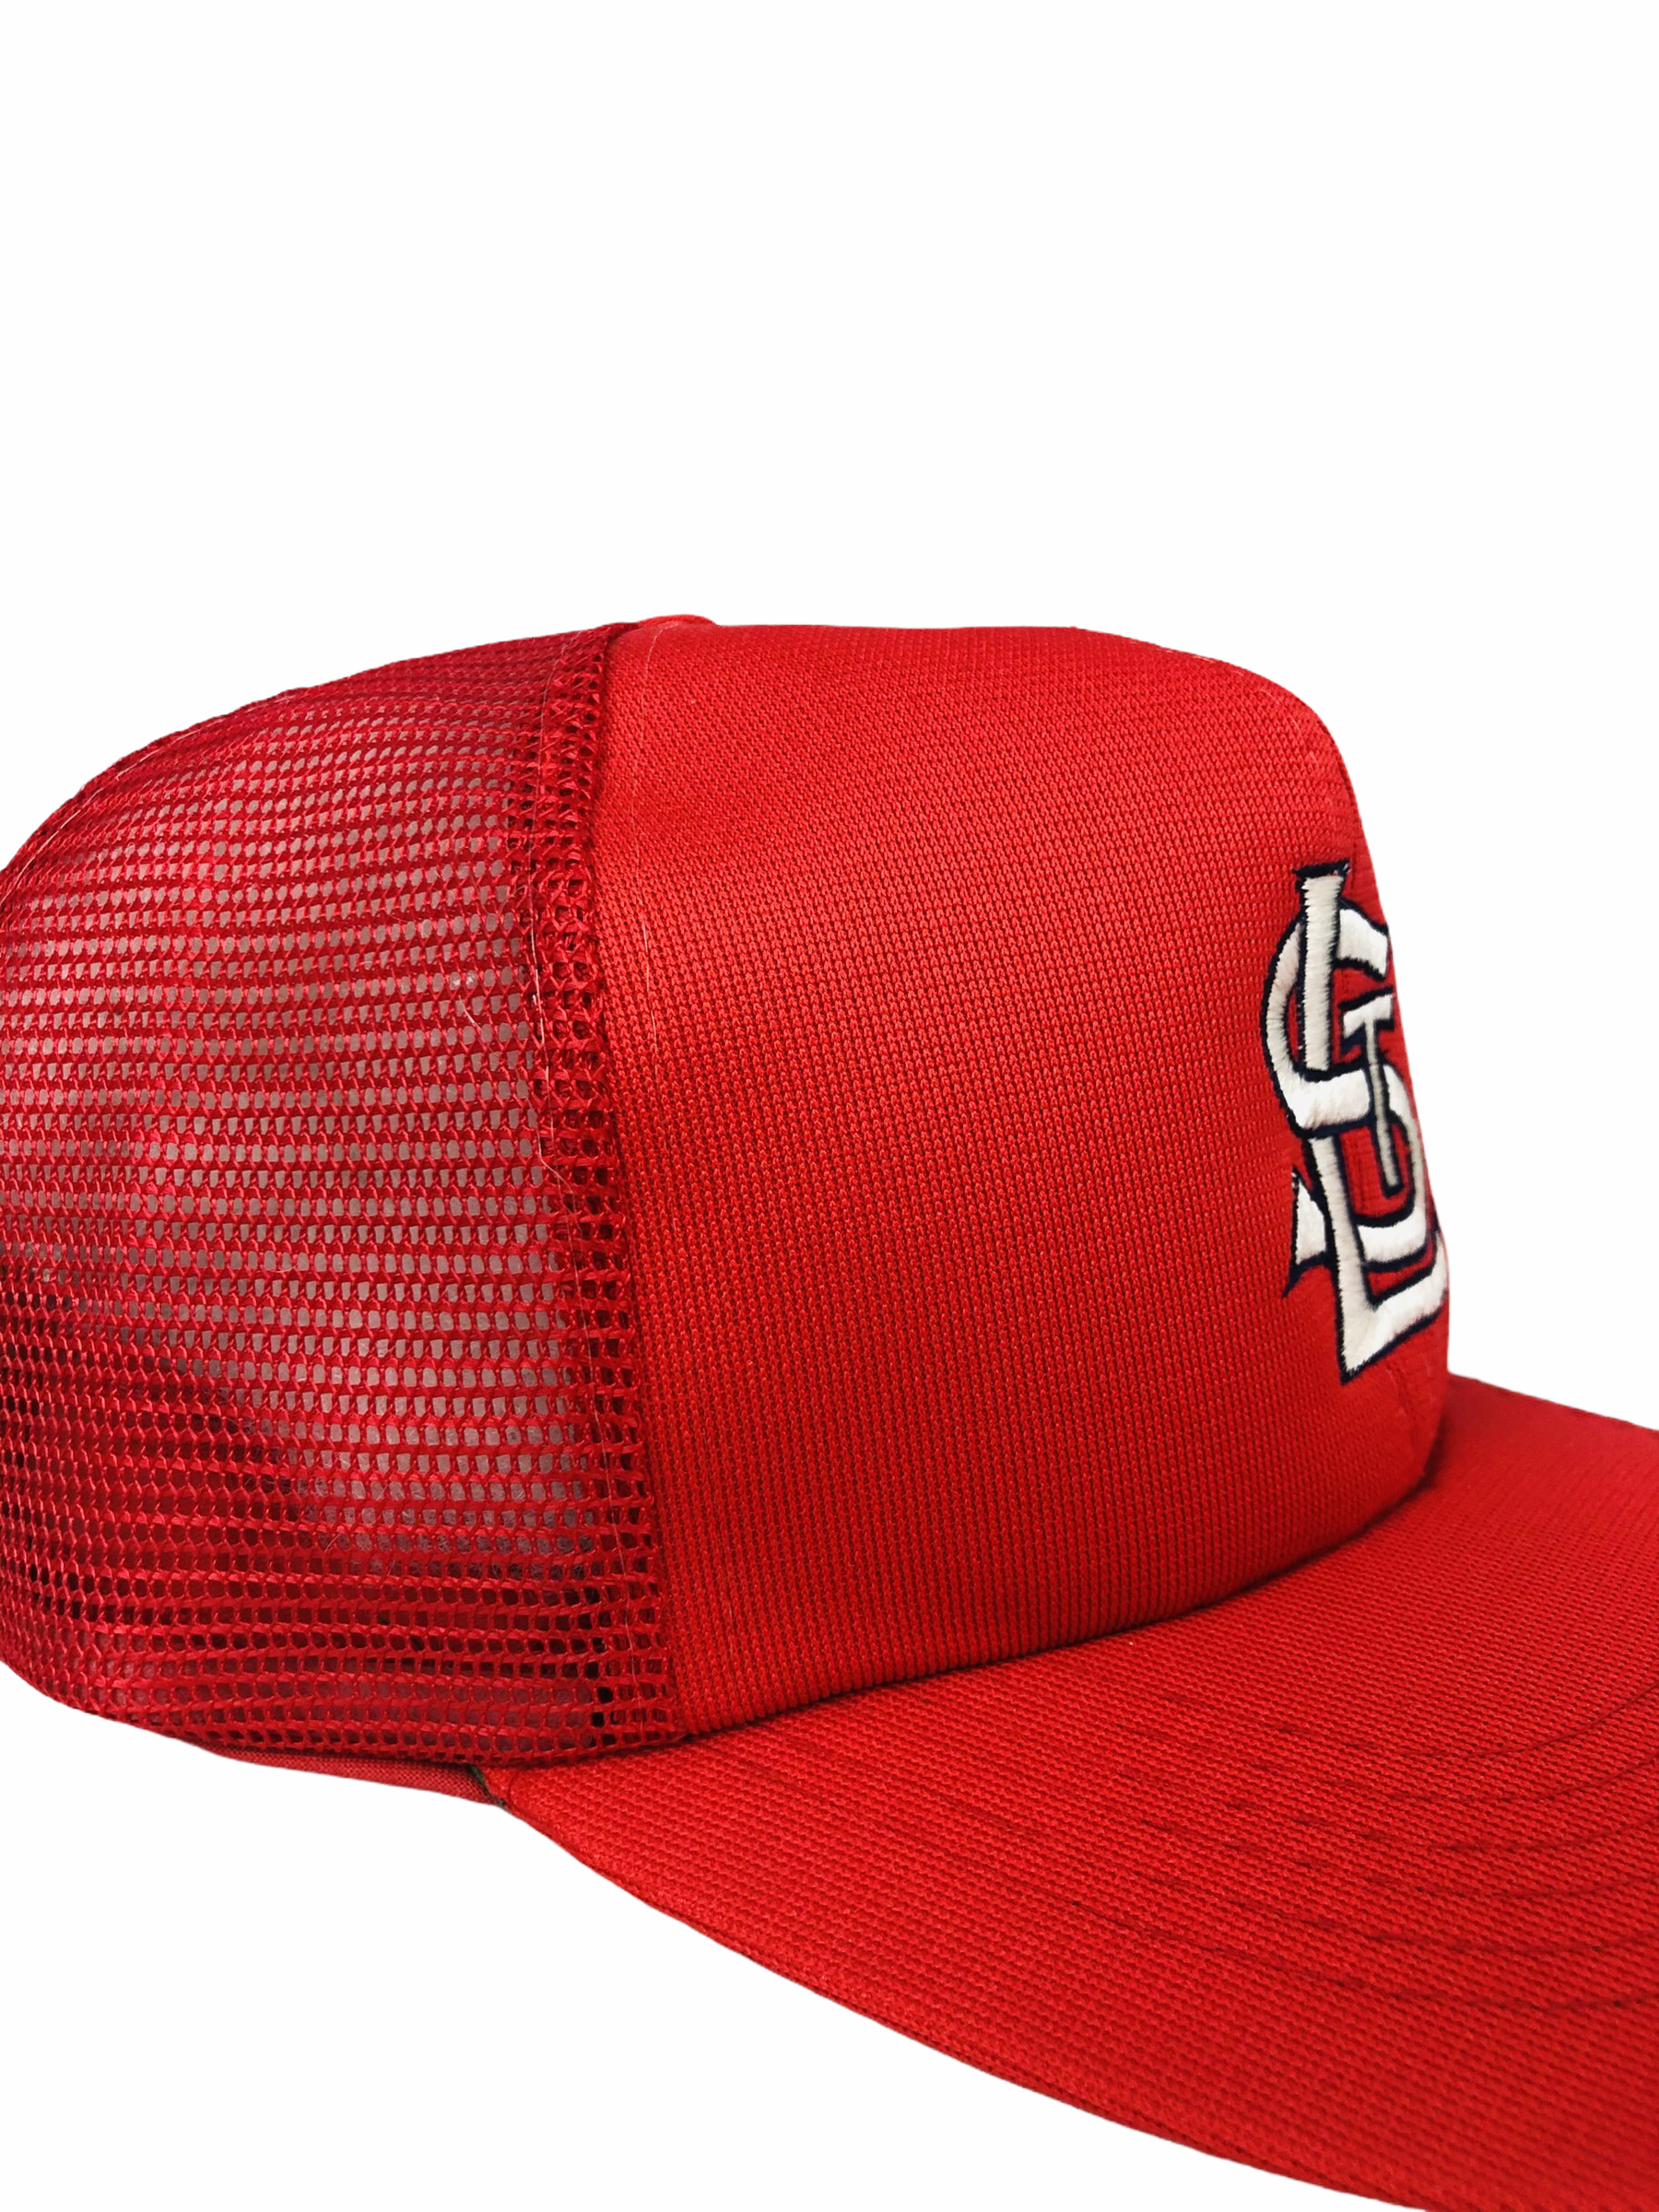 st louis cardinals hat vintage